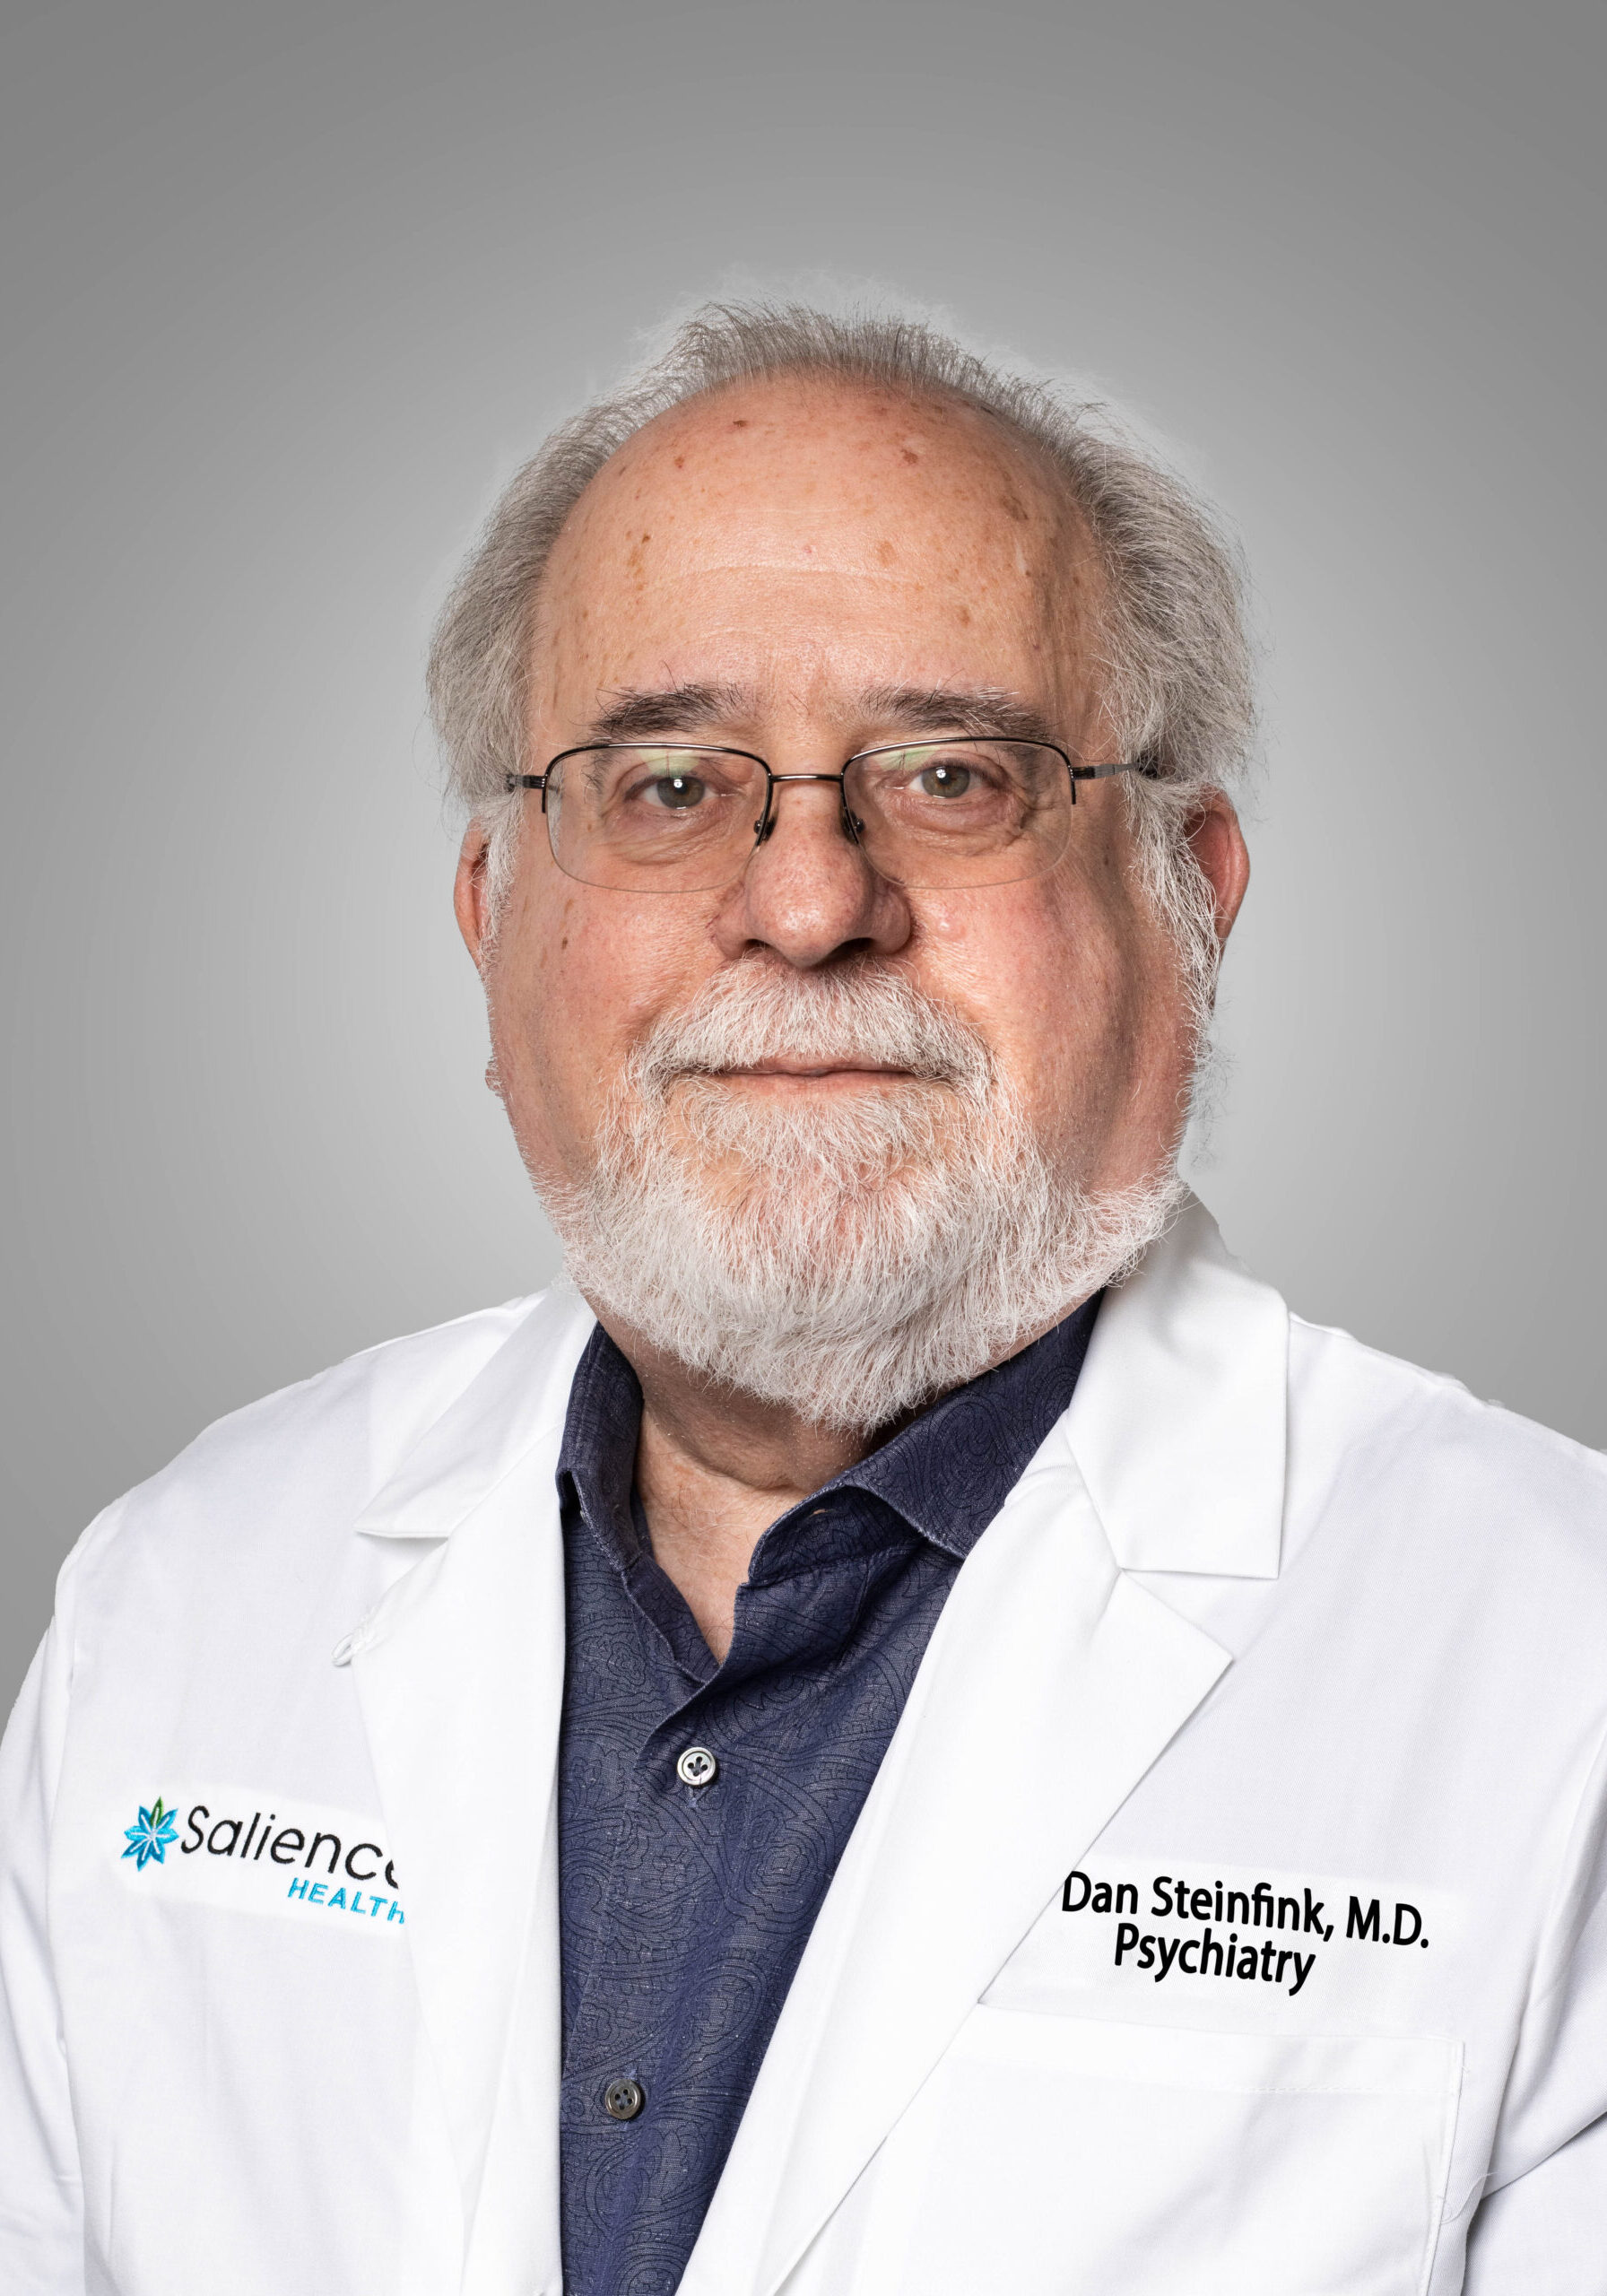 Dan Steinfink M.D. General Psychiatry at Salience Health